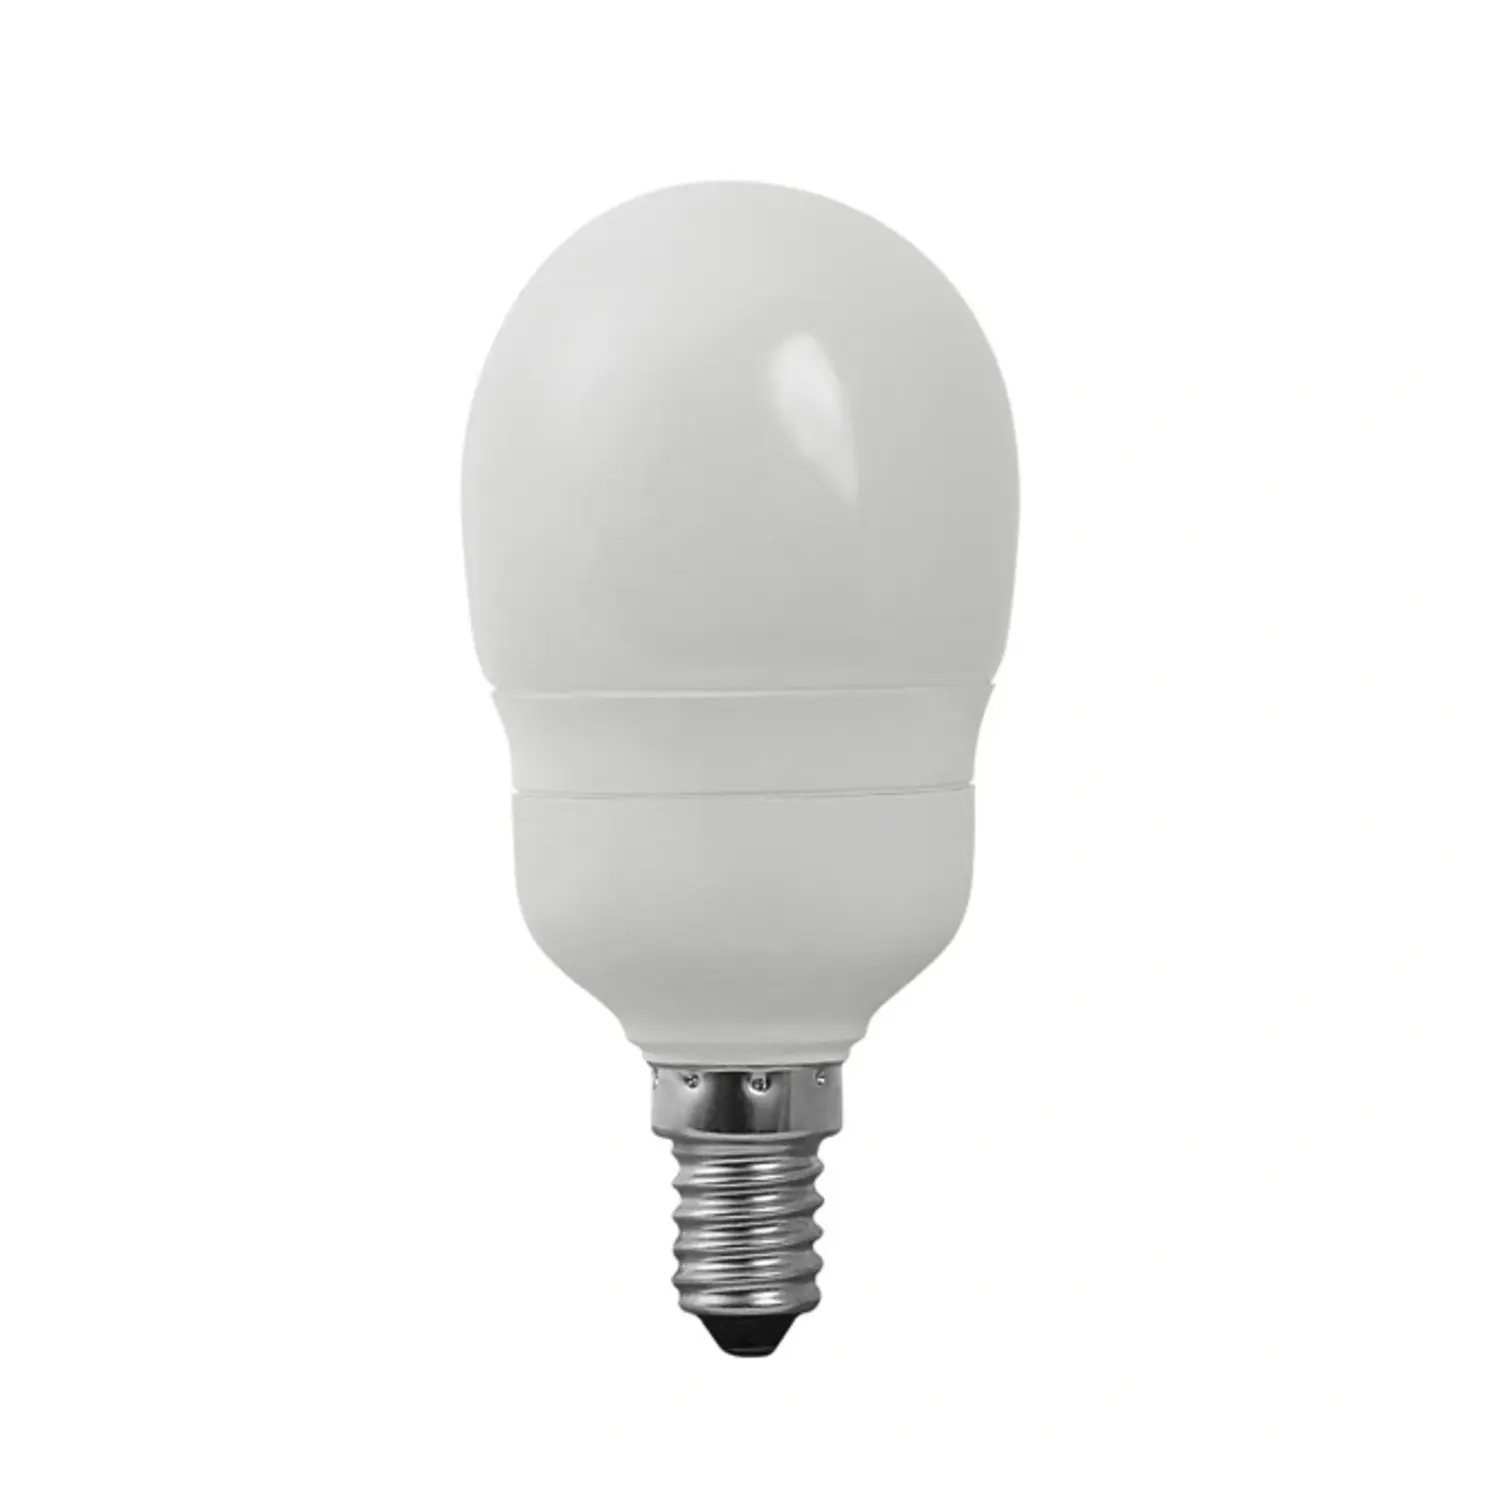 immagine del prodotto lampadina risparmo energetico globetto e14 9watt luce calda kan 12695